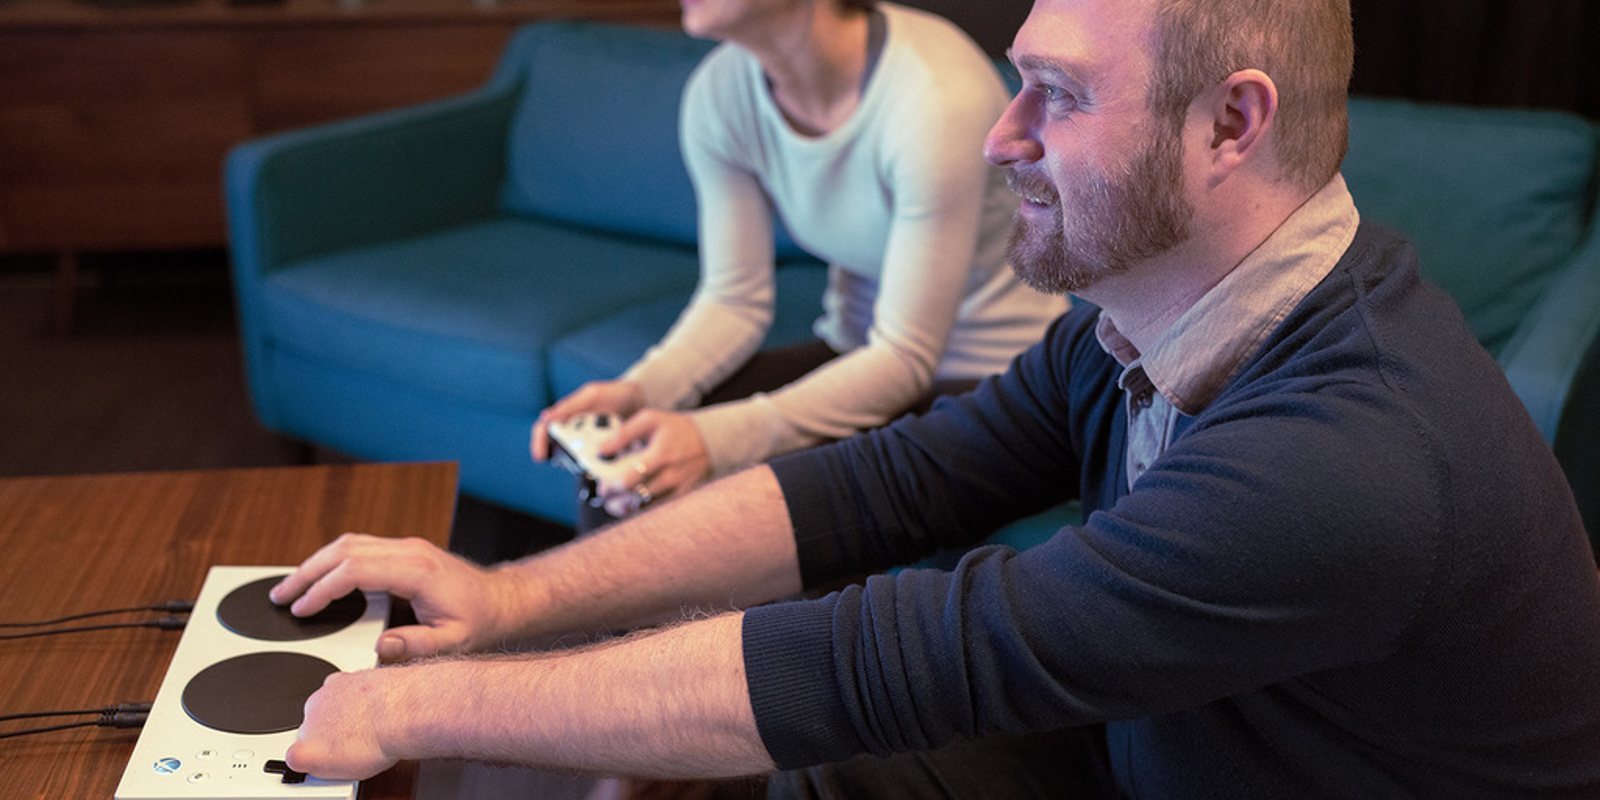 Xbox lanza un nuevo controlador, accesible para personas con diversidad funcional